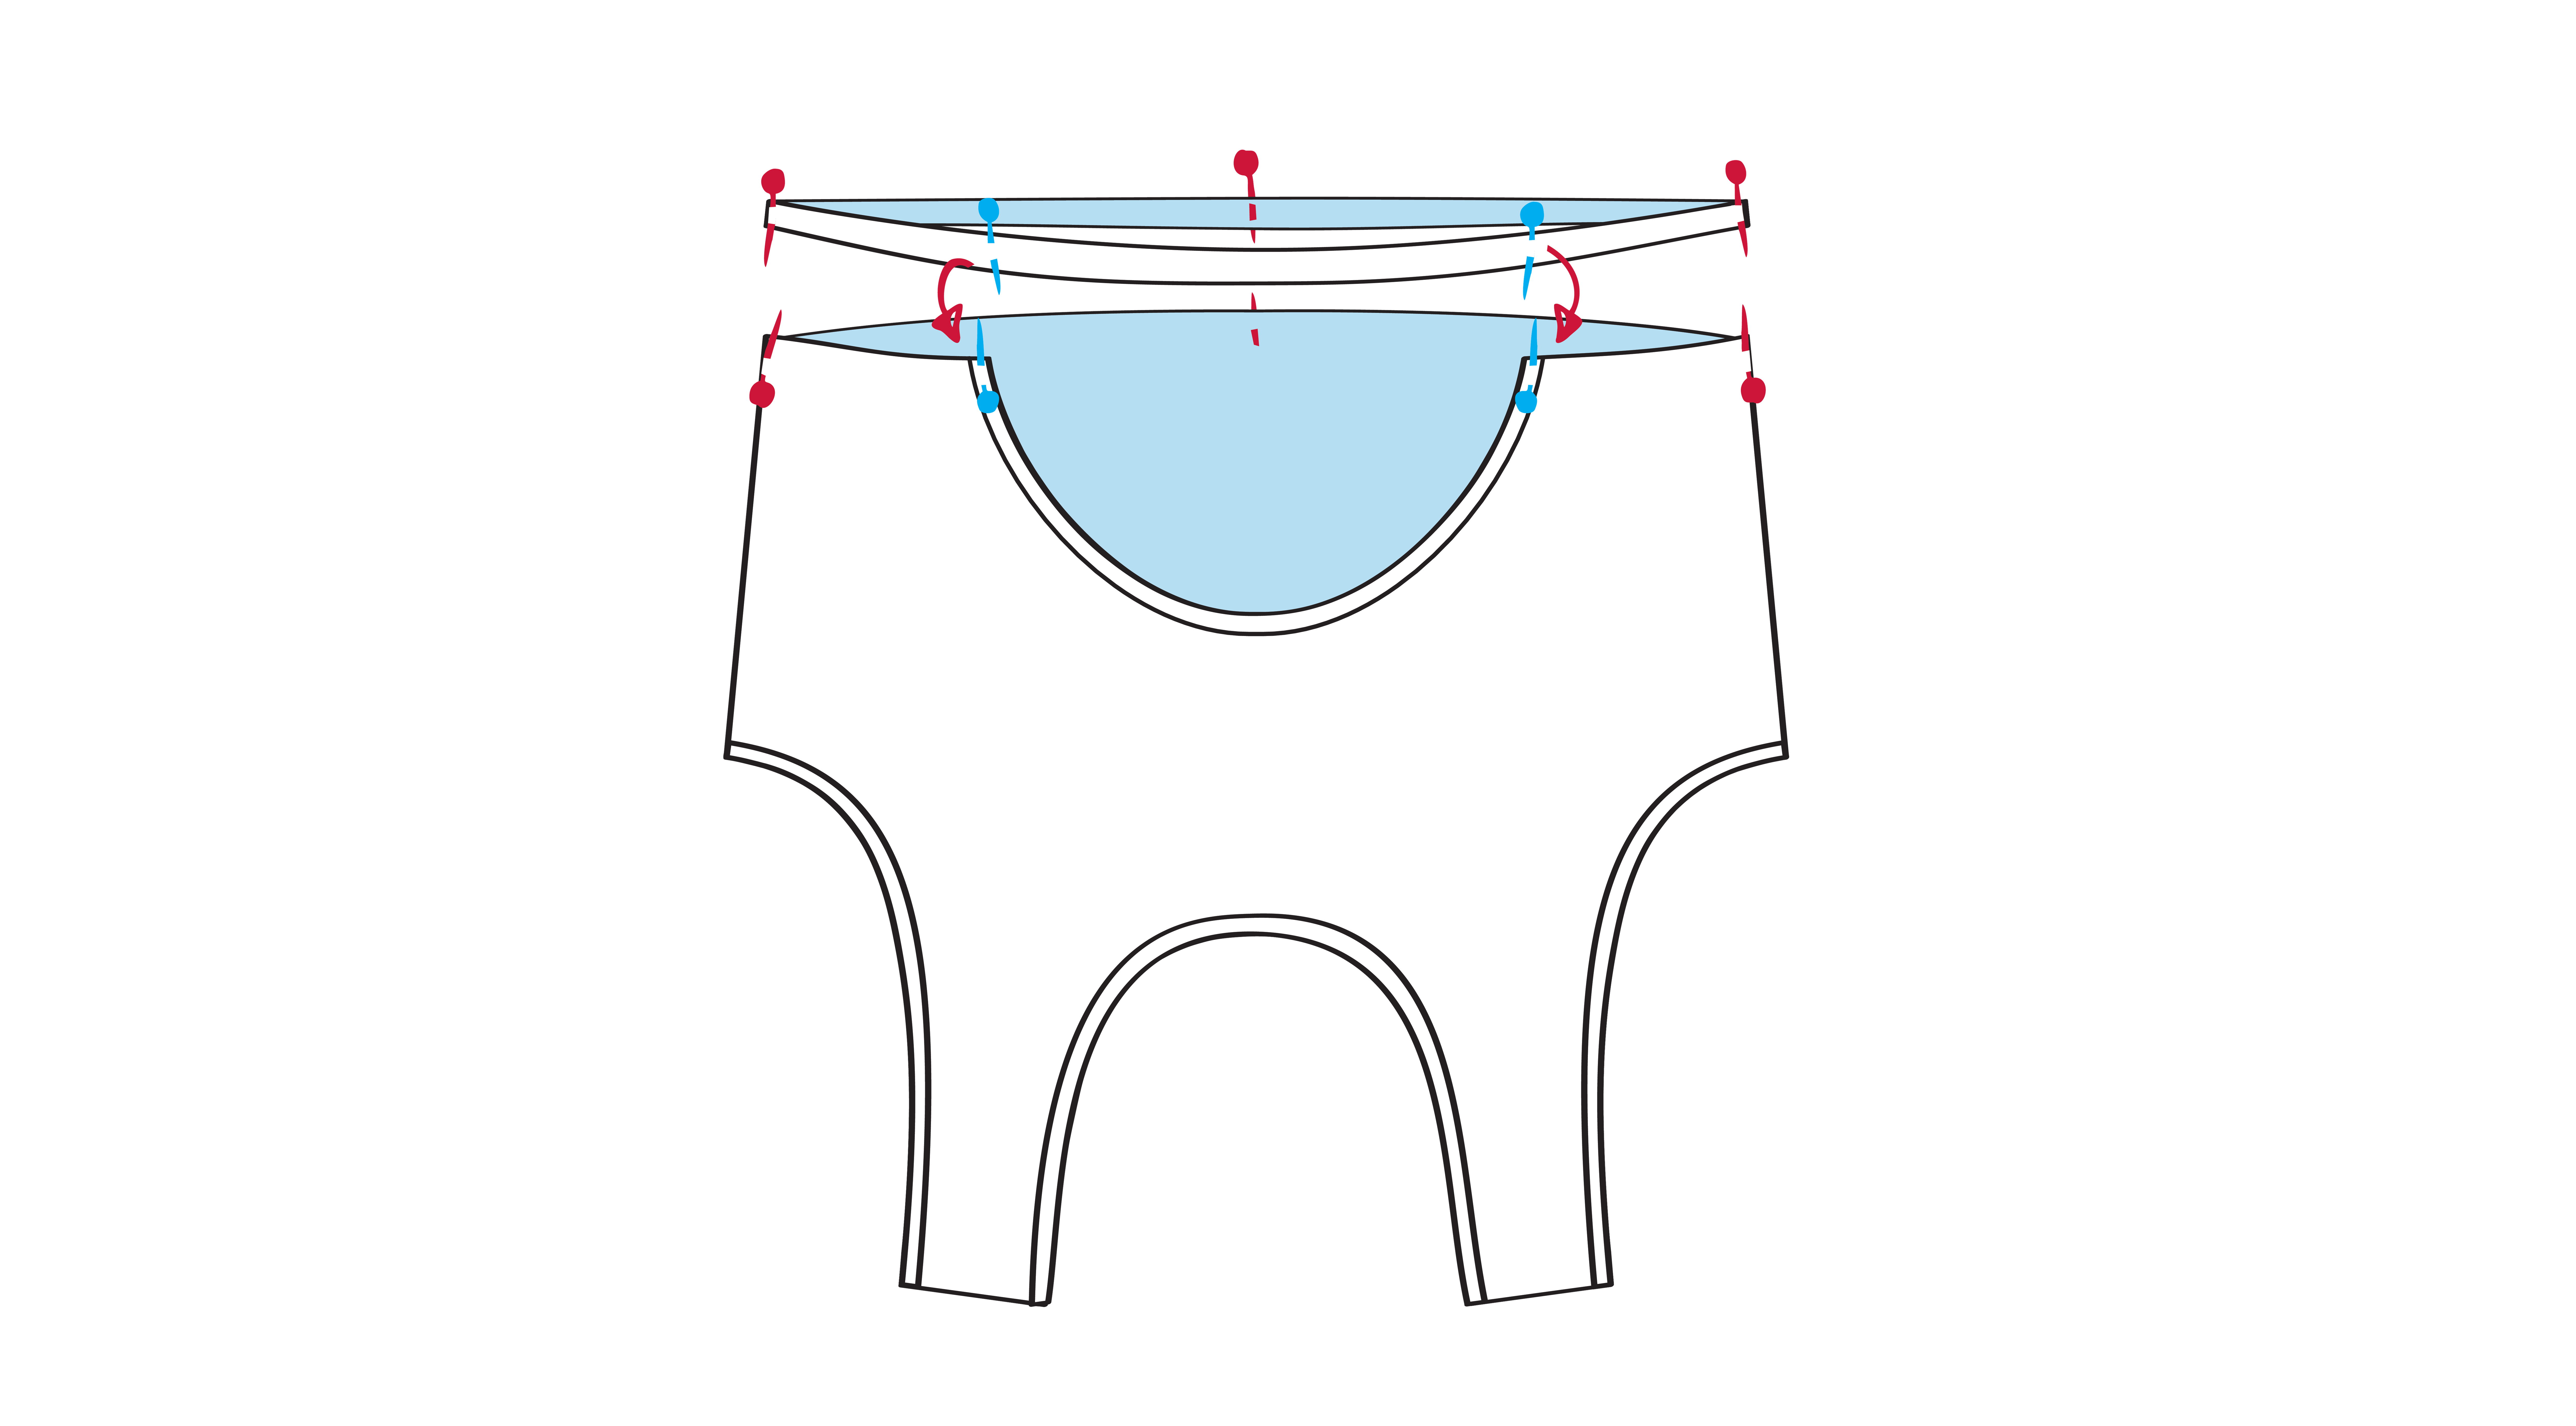 Das Falzband wird beim Cut Out an beiden Seiten, in der hinteren Mitte und an den Seitennähten fixiert